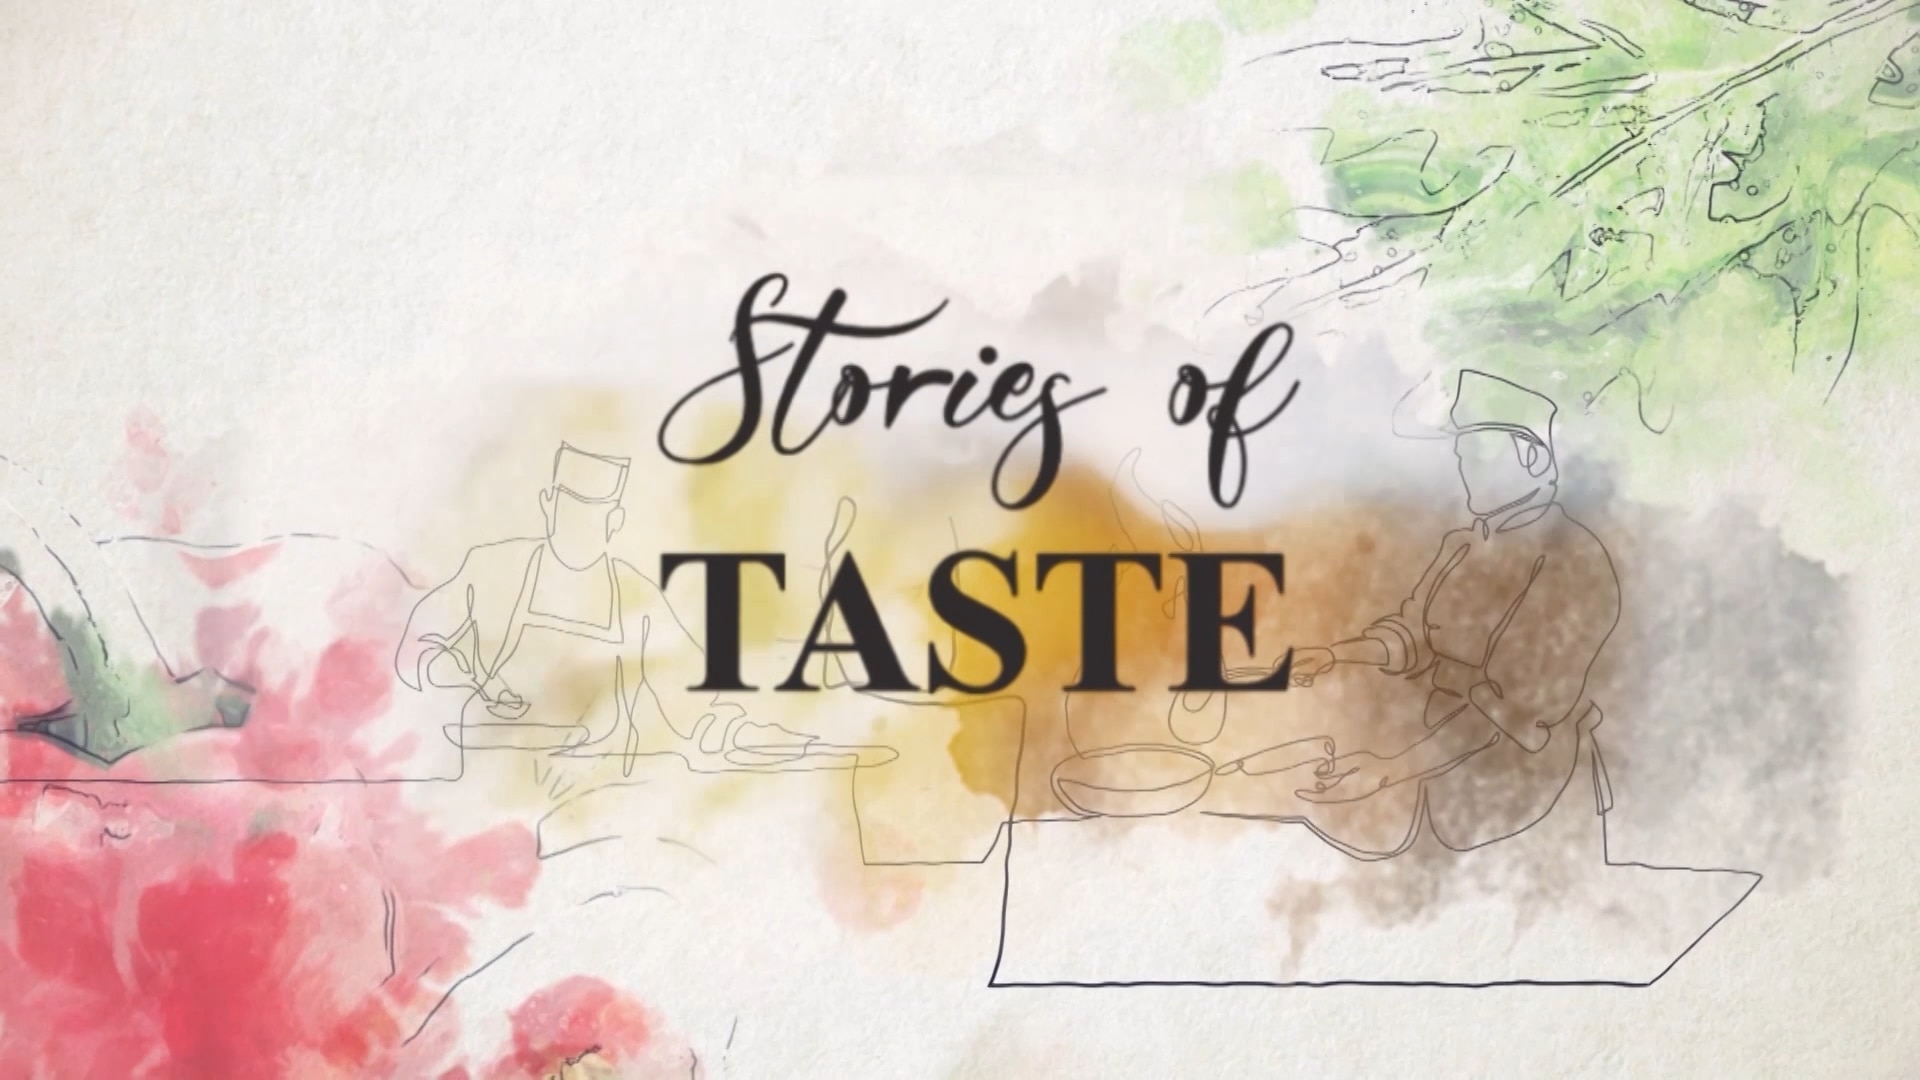 Stories of Taste